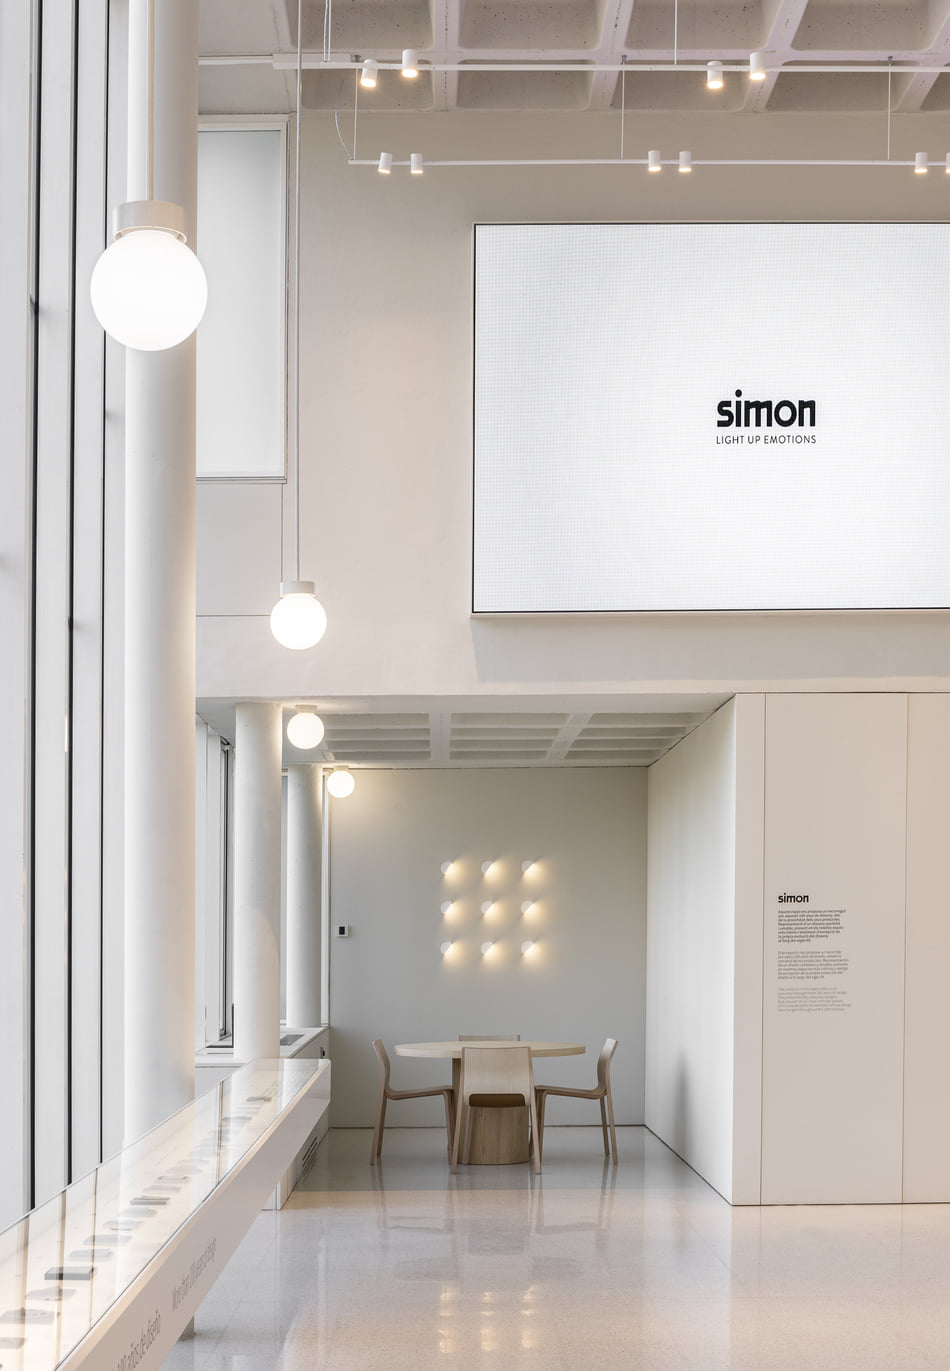 Fábrica Olot Simon | Espacios | Estudio Antoni Arola